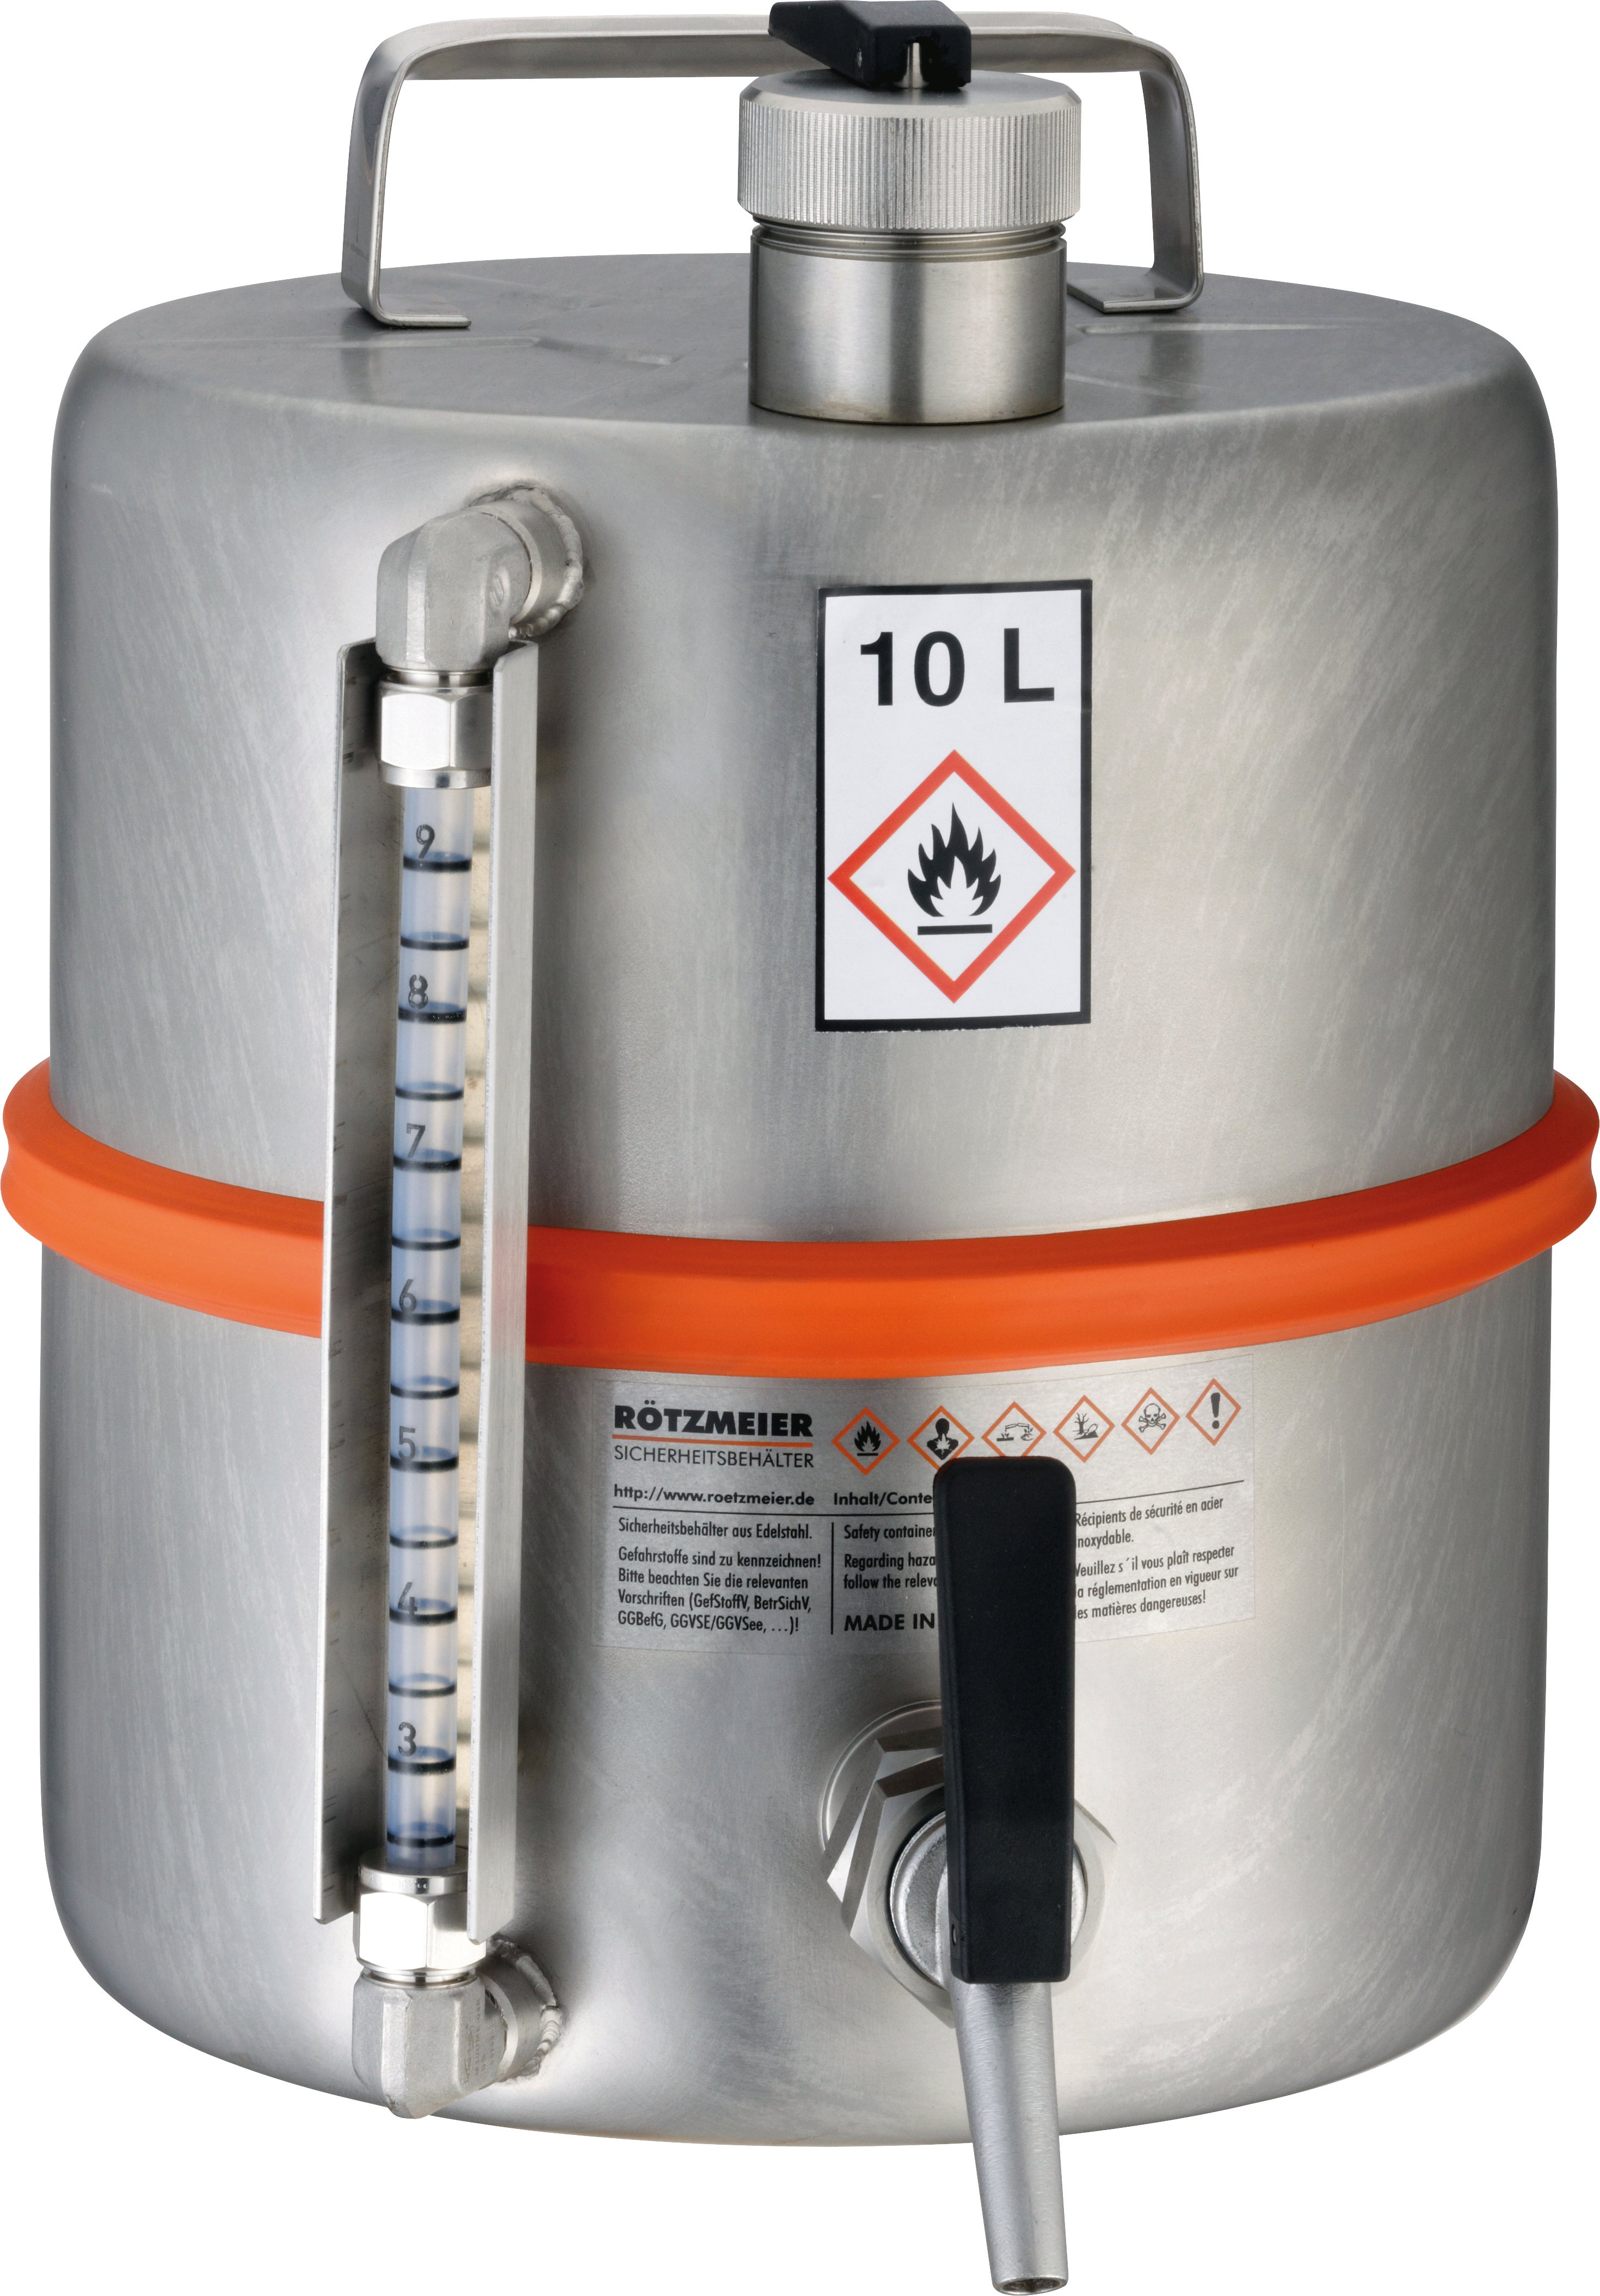 Récipient de sécurité debout acier inoxydable (1.4571), robinet, indicateur de niveau, acier inoxydable 1.4571 matt